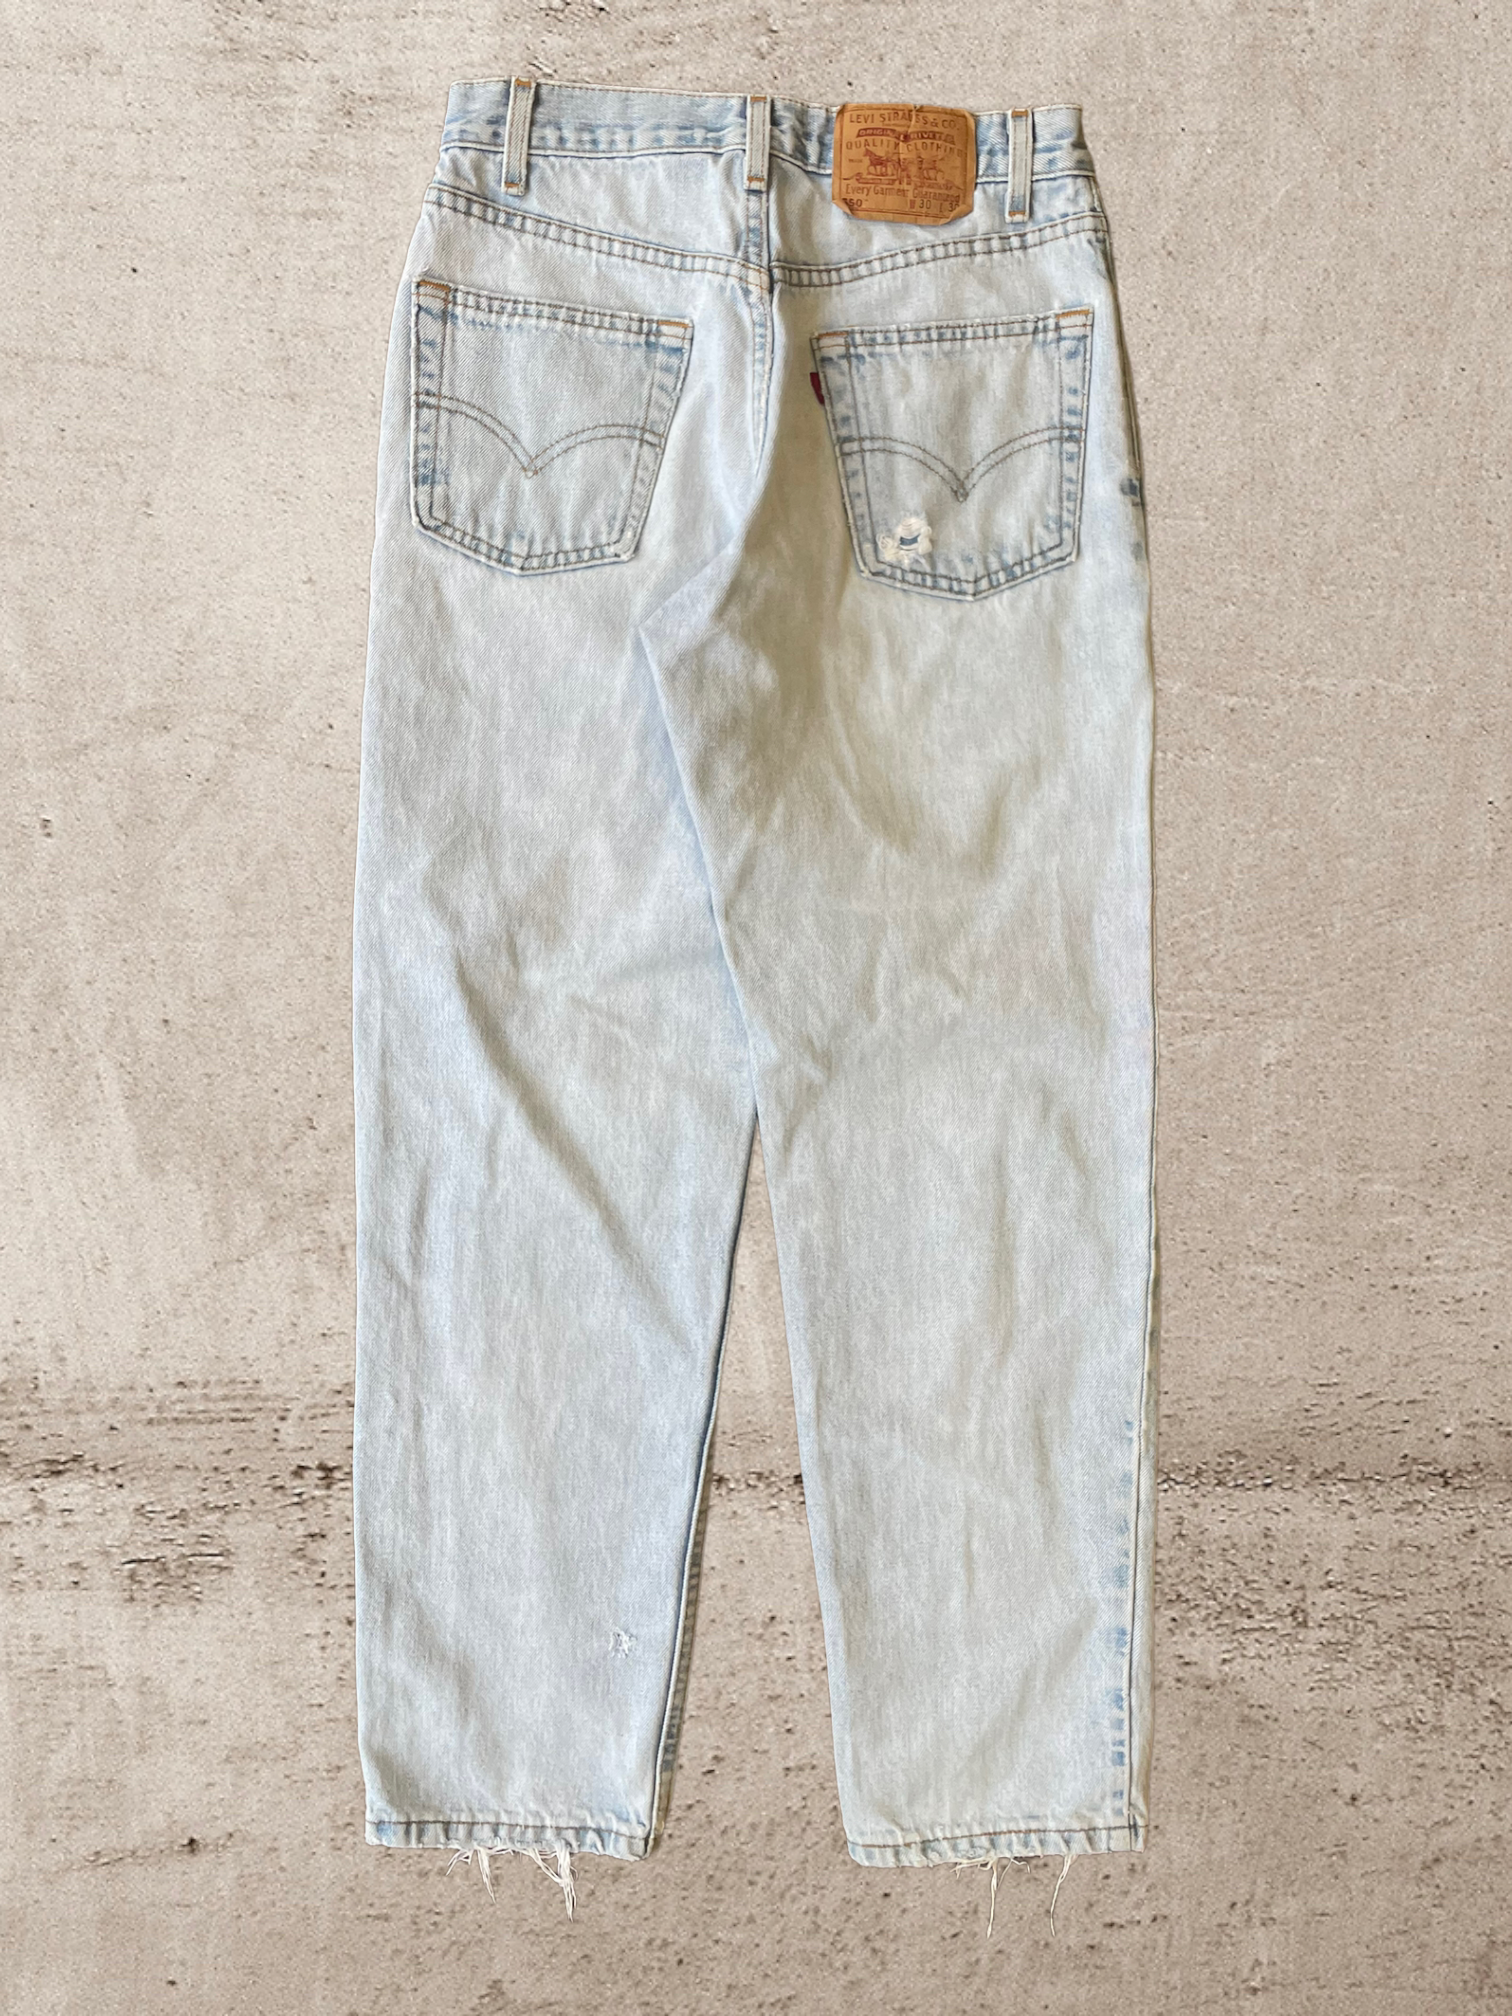 90s Levi 550 Light Wash Jeans - 30x30